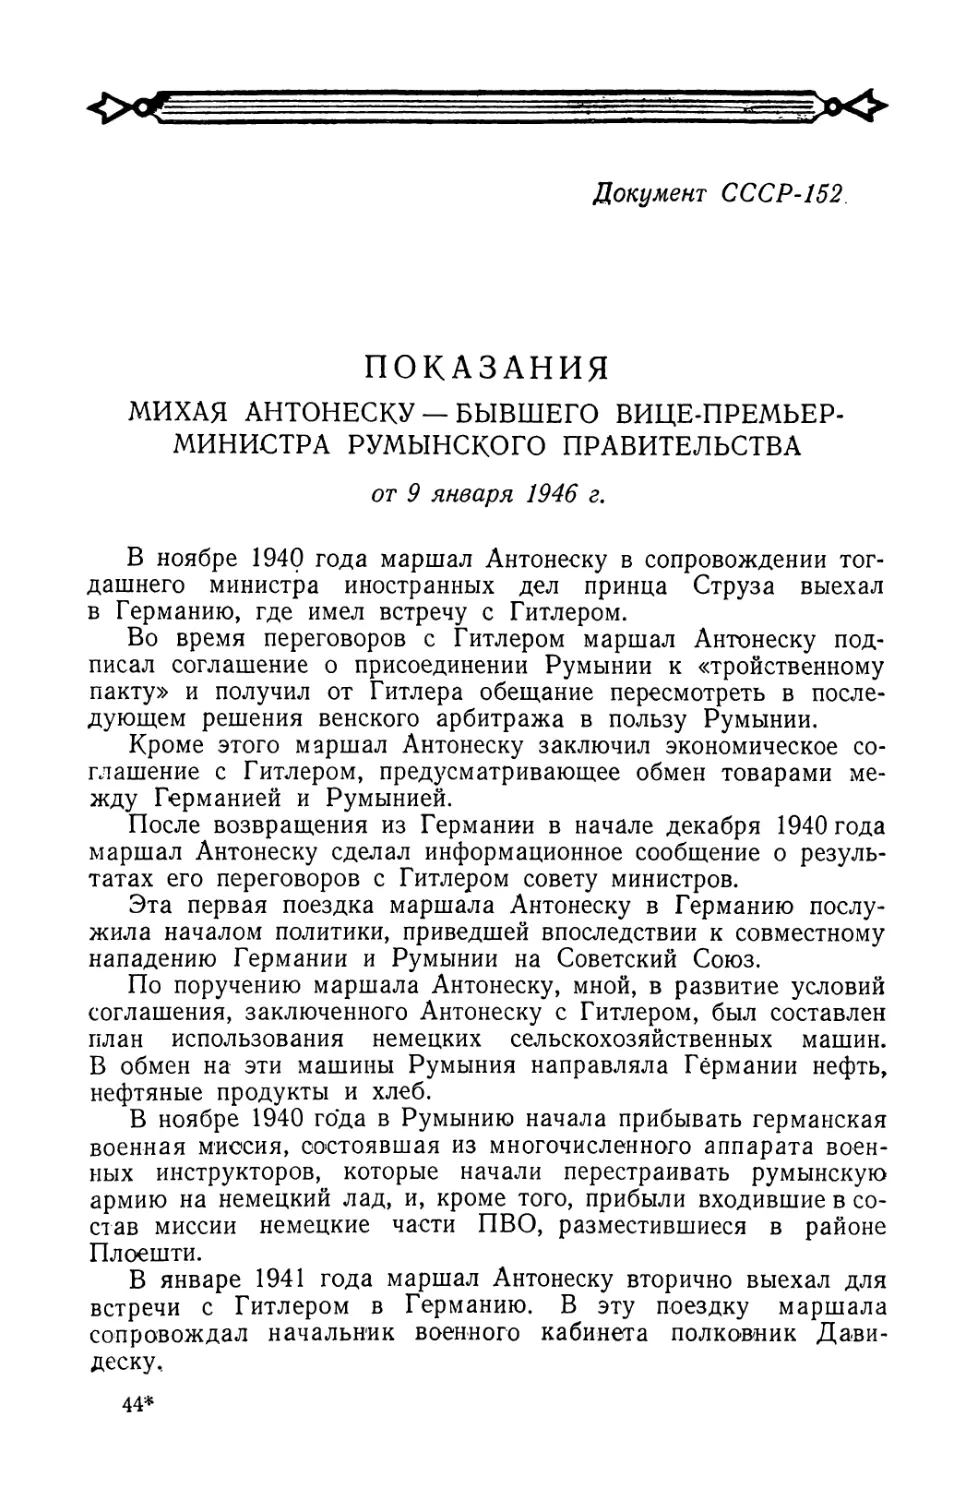 Показания бывшего вице-премьер-министра Румынского правительства Михая Антонеску от 9 января 1946 г.